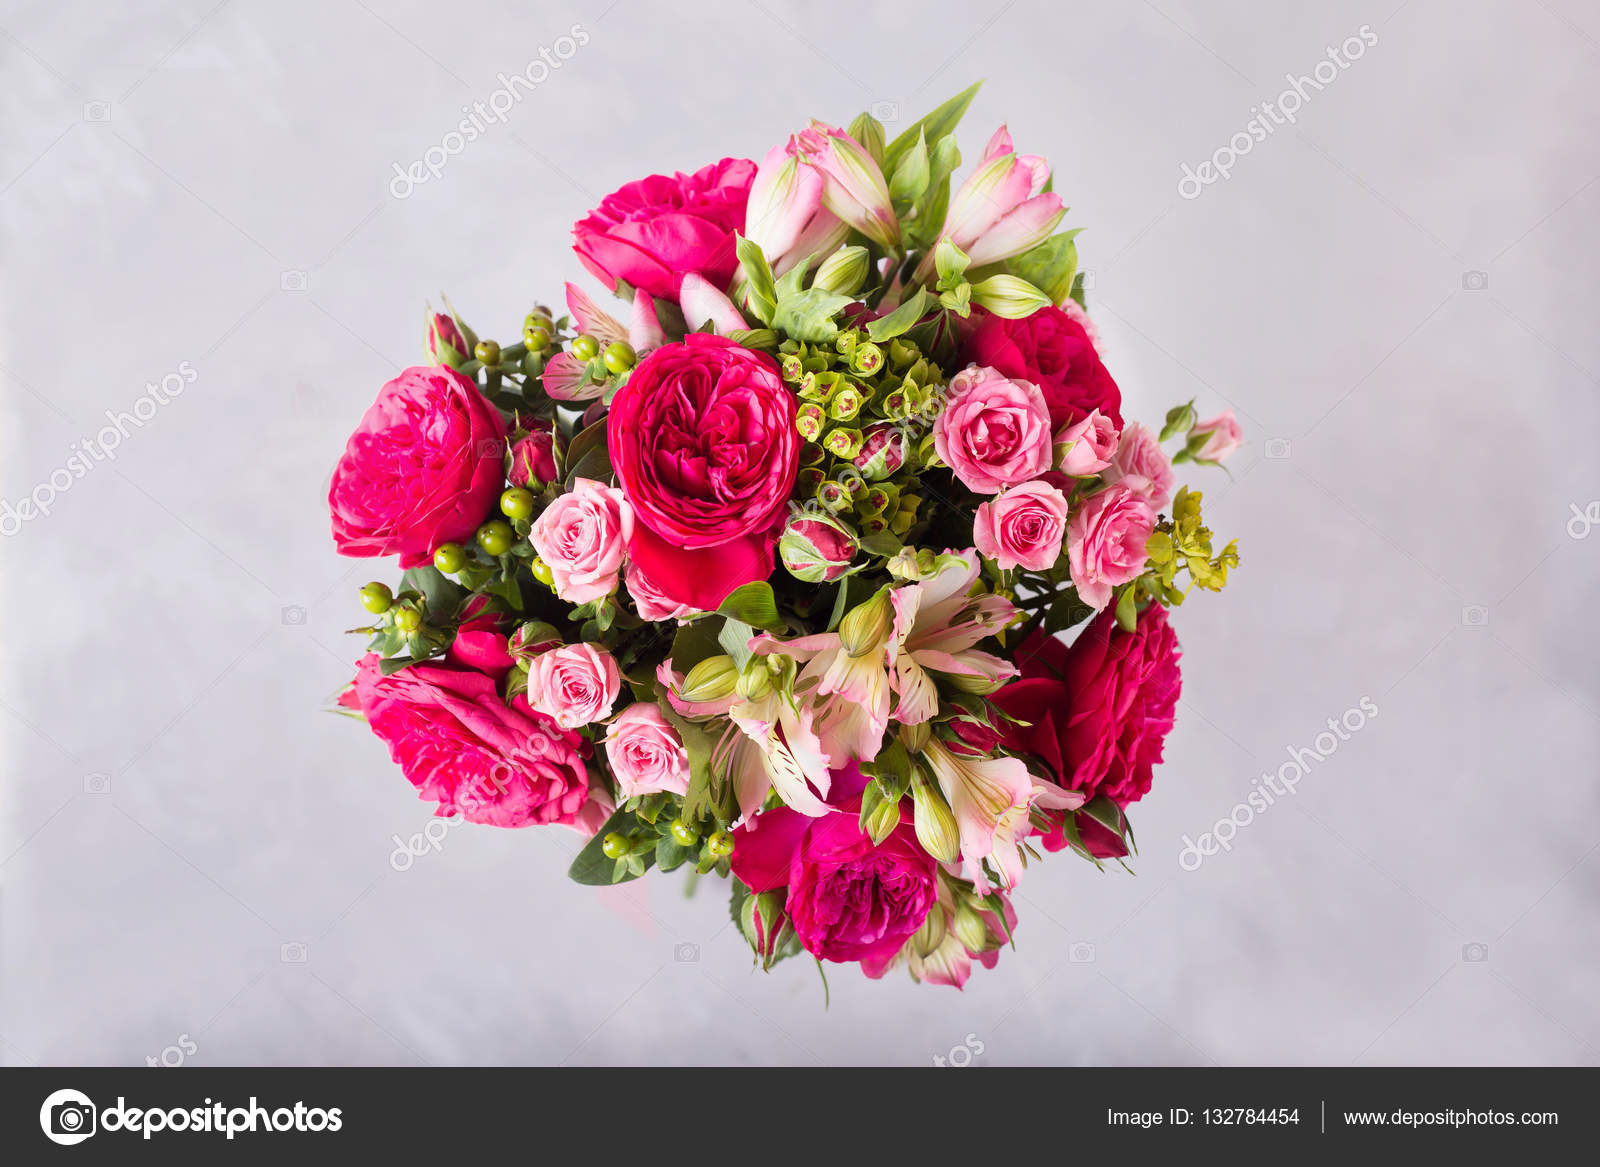 花束的红色 粉红色的玫瑰和粉红色牡丹 六出 静物与五颜六色的鲜花 新鲜的玫瑰 文本的地方 花概念 新鲜的春花束 夏季背景